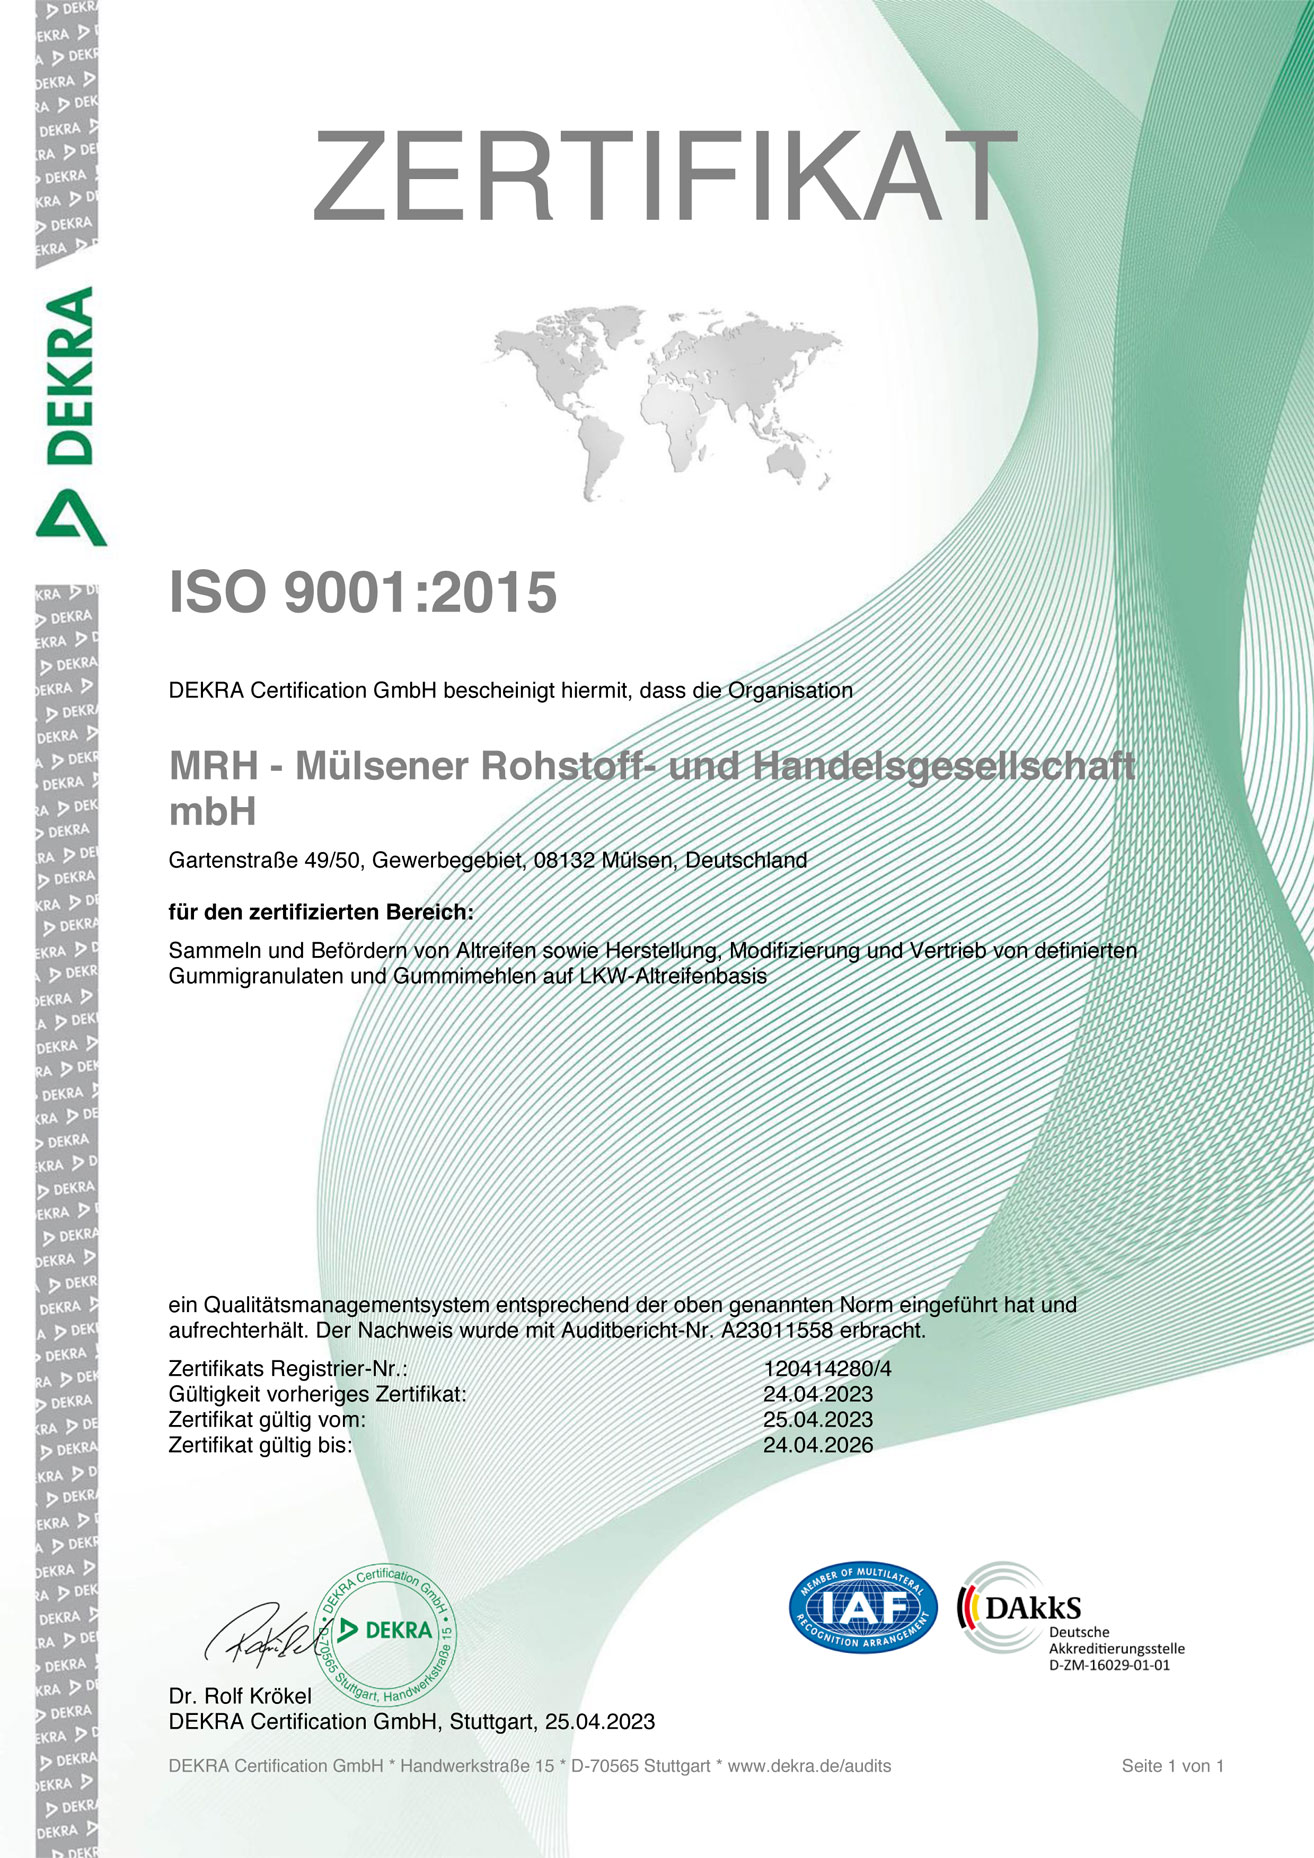 ISO 9001:2015-Zertifikat für die MRH Mülsener Rohstoff- und Handelsgesellschaft mbH